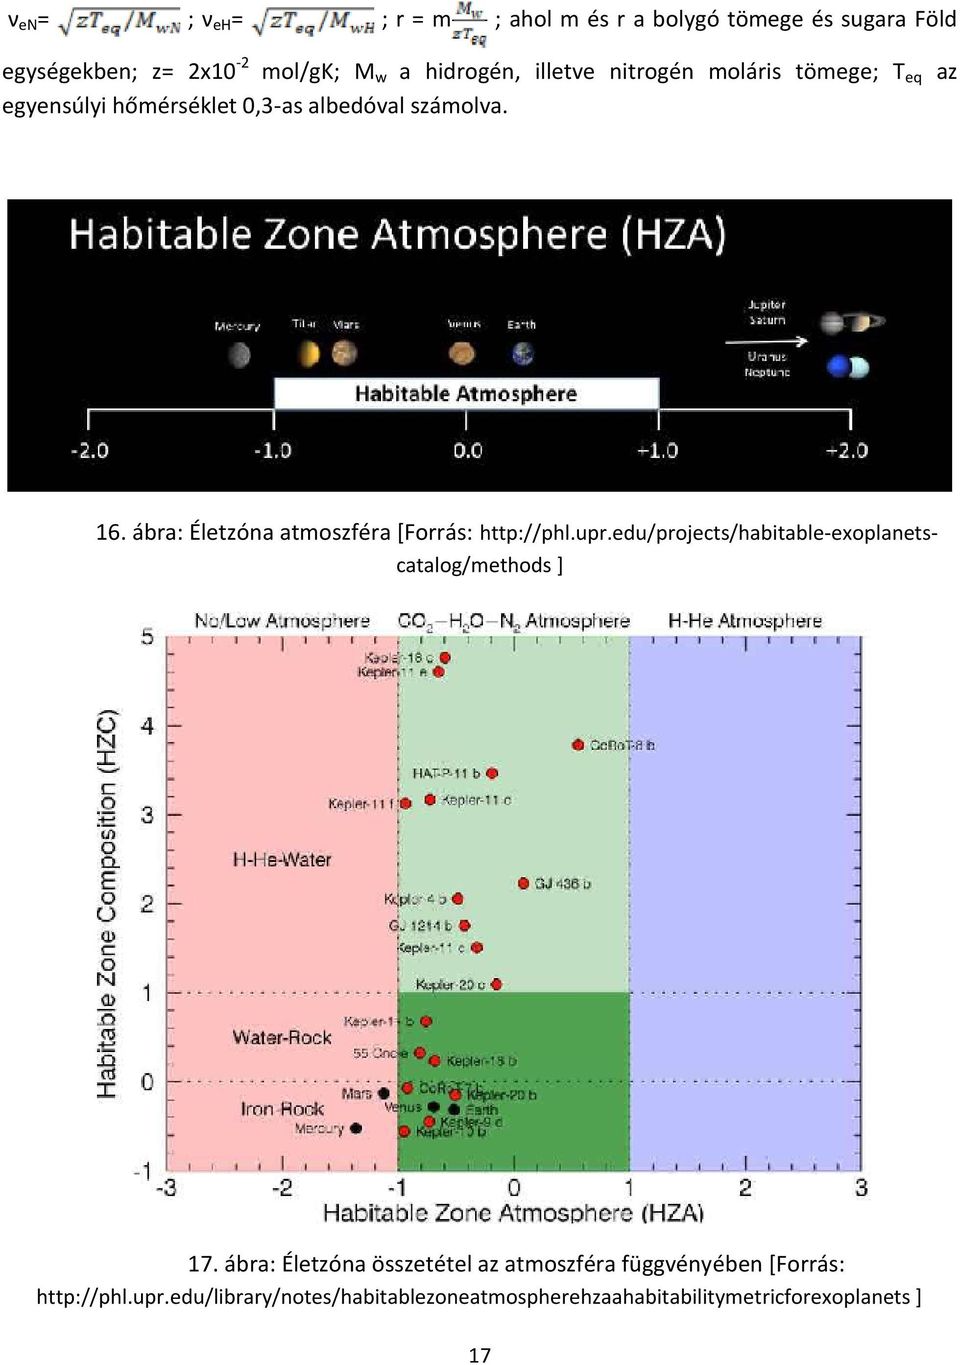 ábra: Életzóna atmoszféra [Forrás: http://phl.upr.edu/projects/habitable-exoplanetscatalog/methods ] 17.